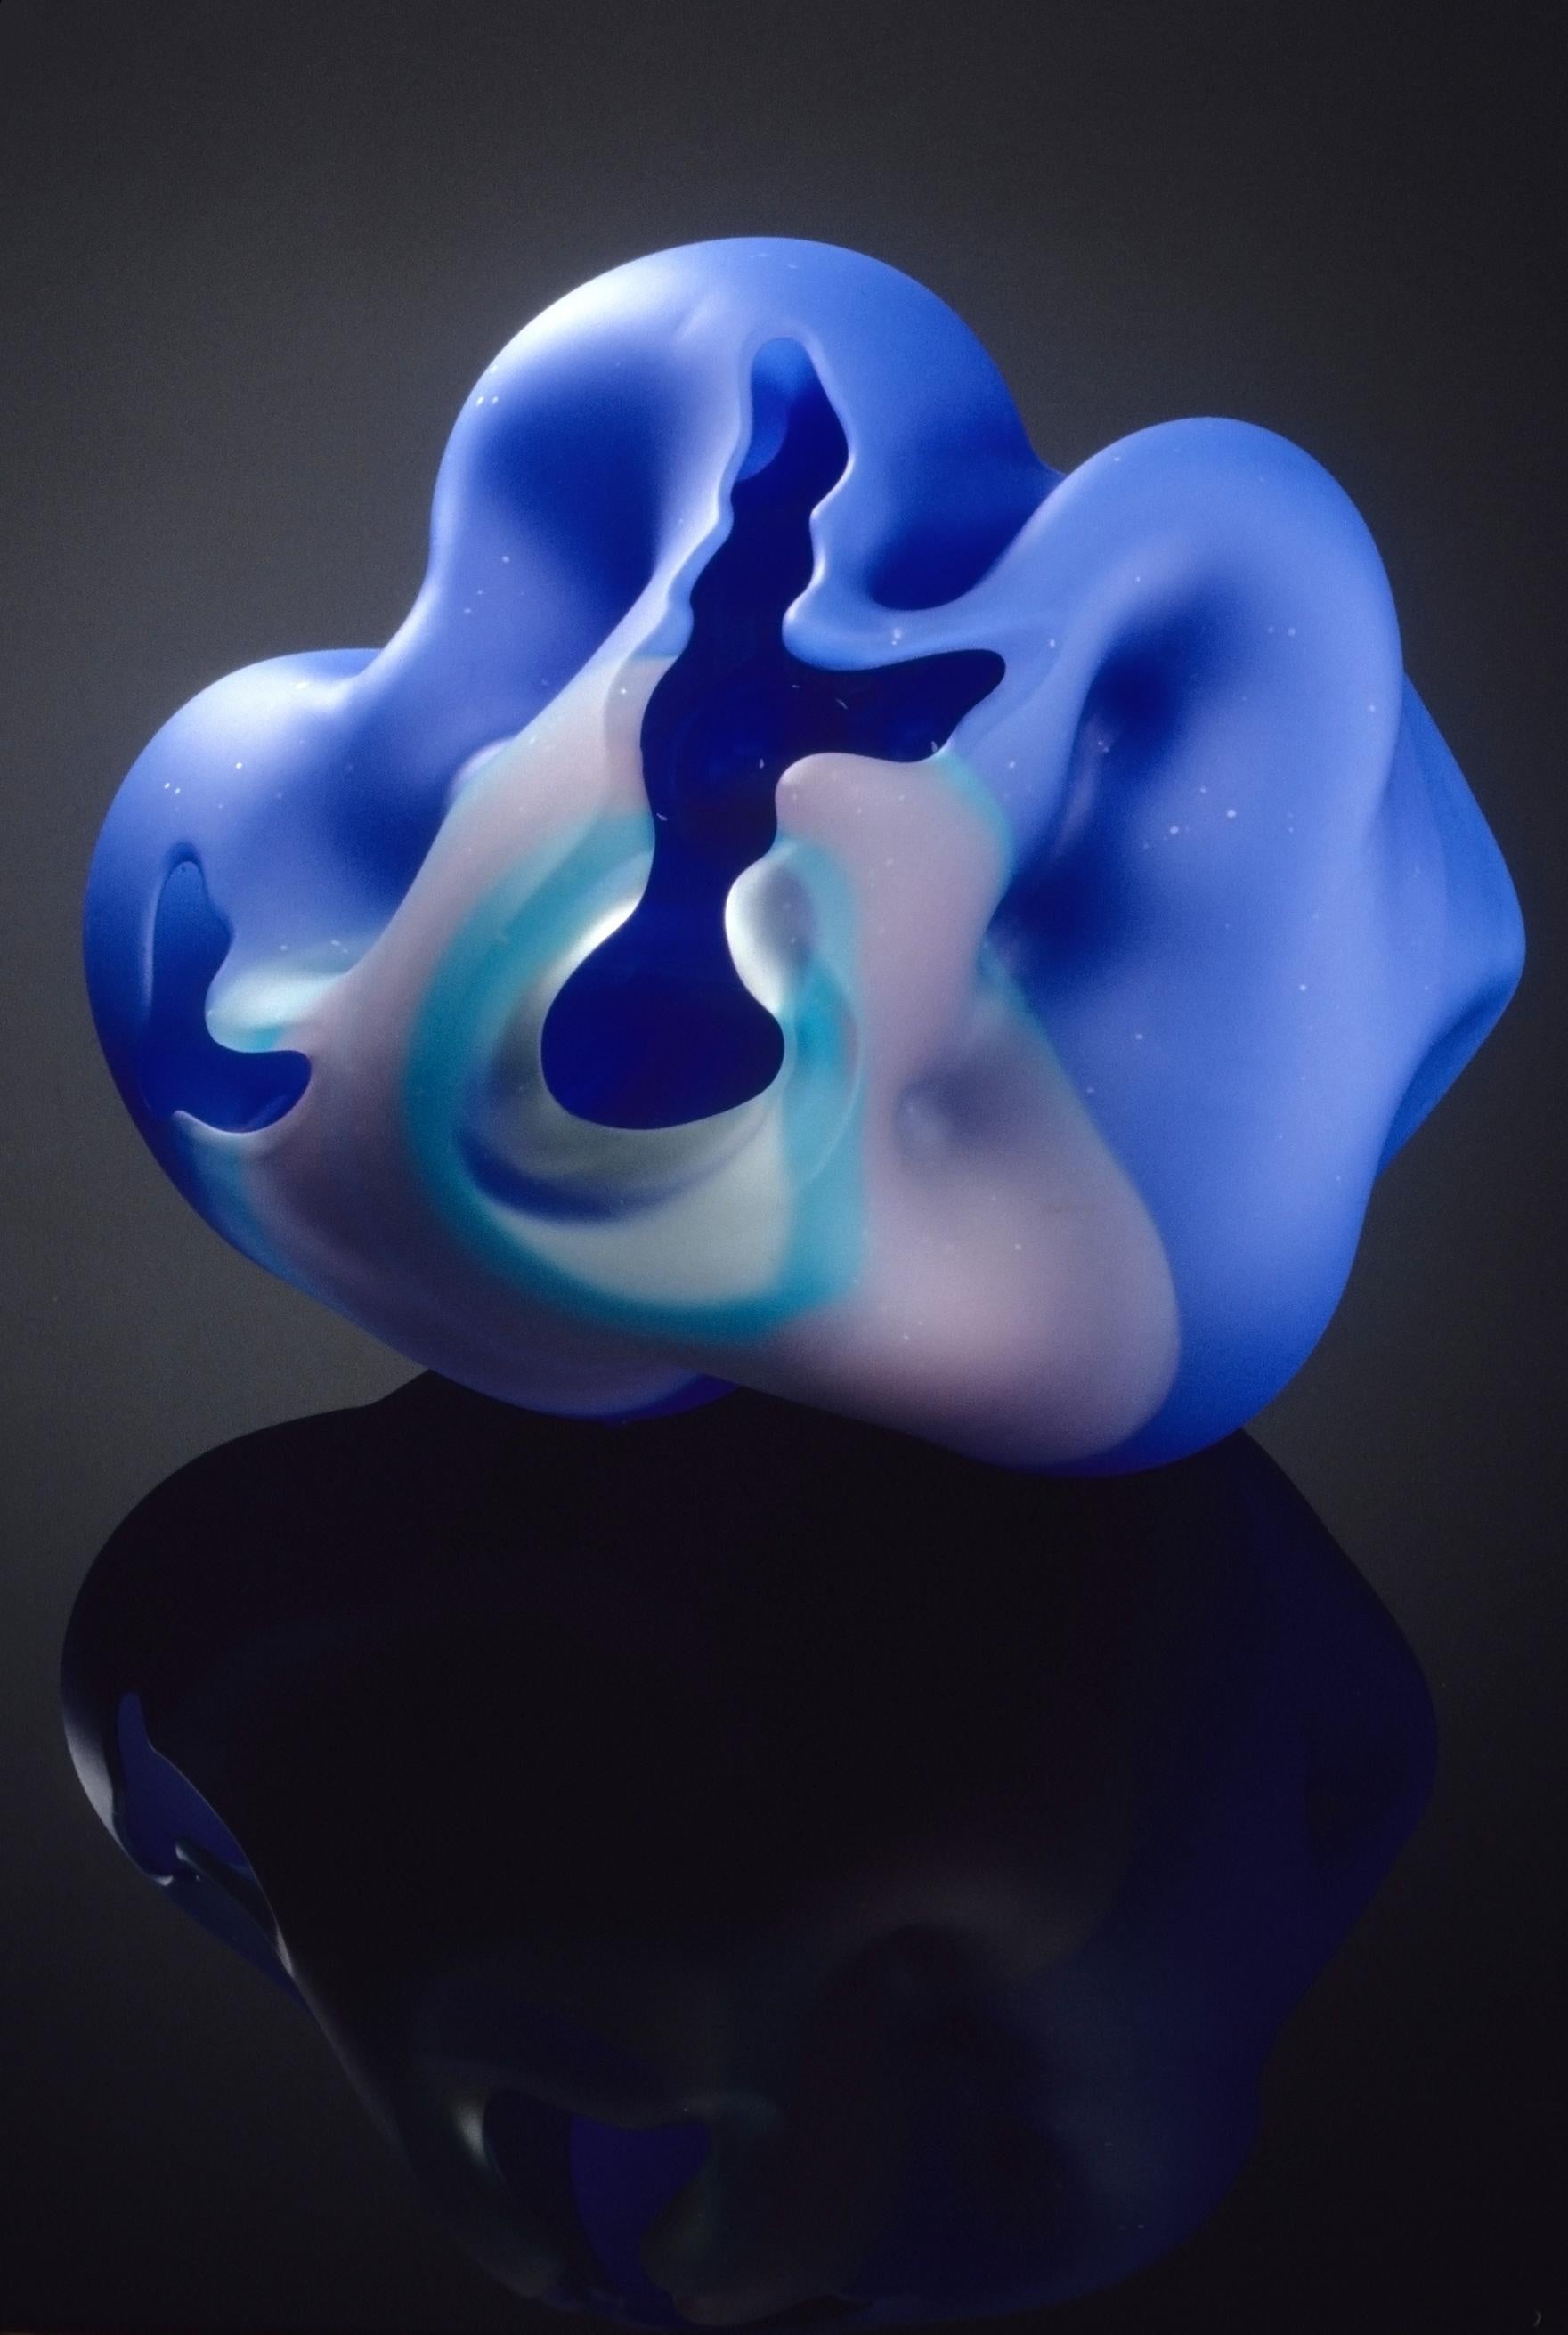 Marvin Lipofsky Abstract Sculpture - "Pilchuck Summer Series #8", Abstract Blown Glass Sculpture, Sandblasted Surface